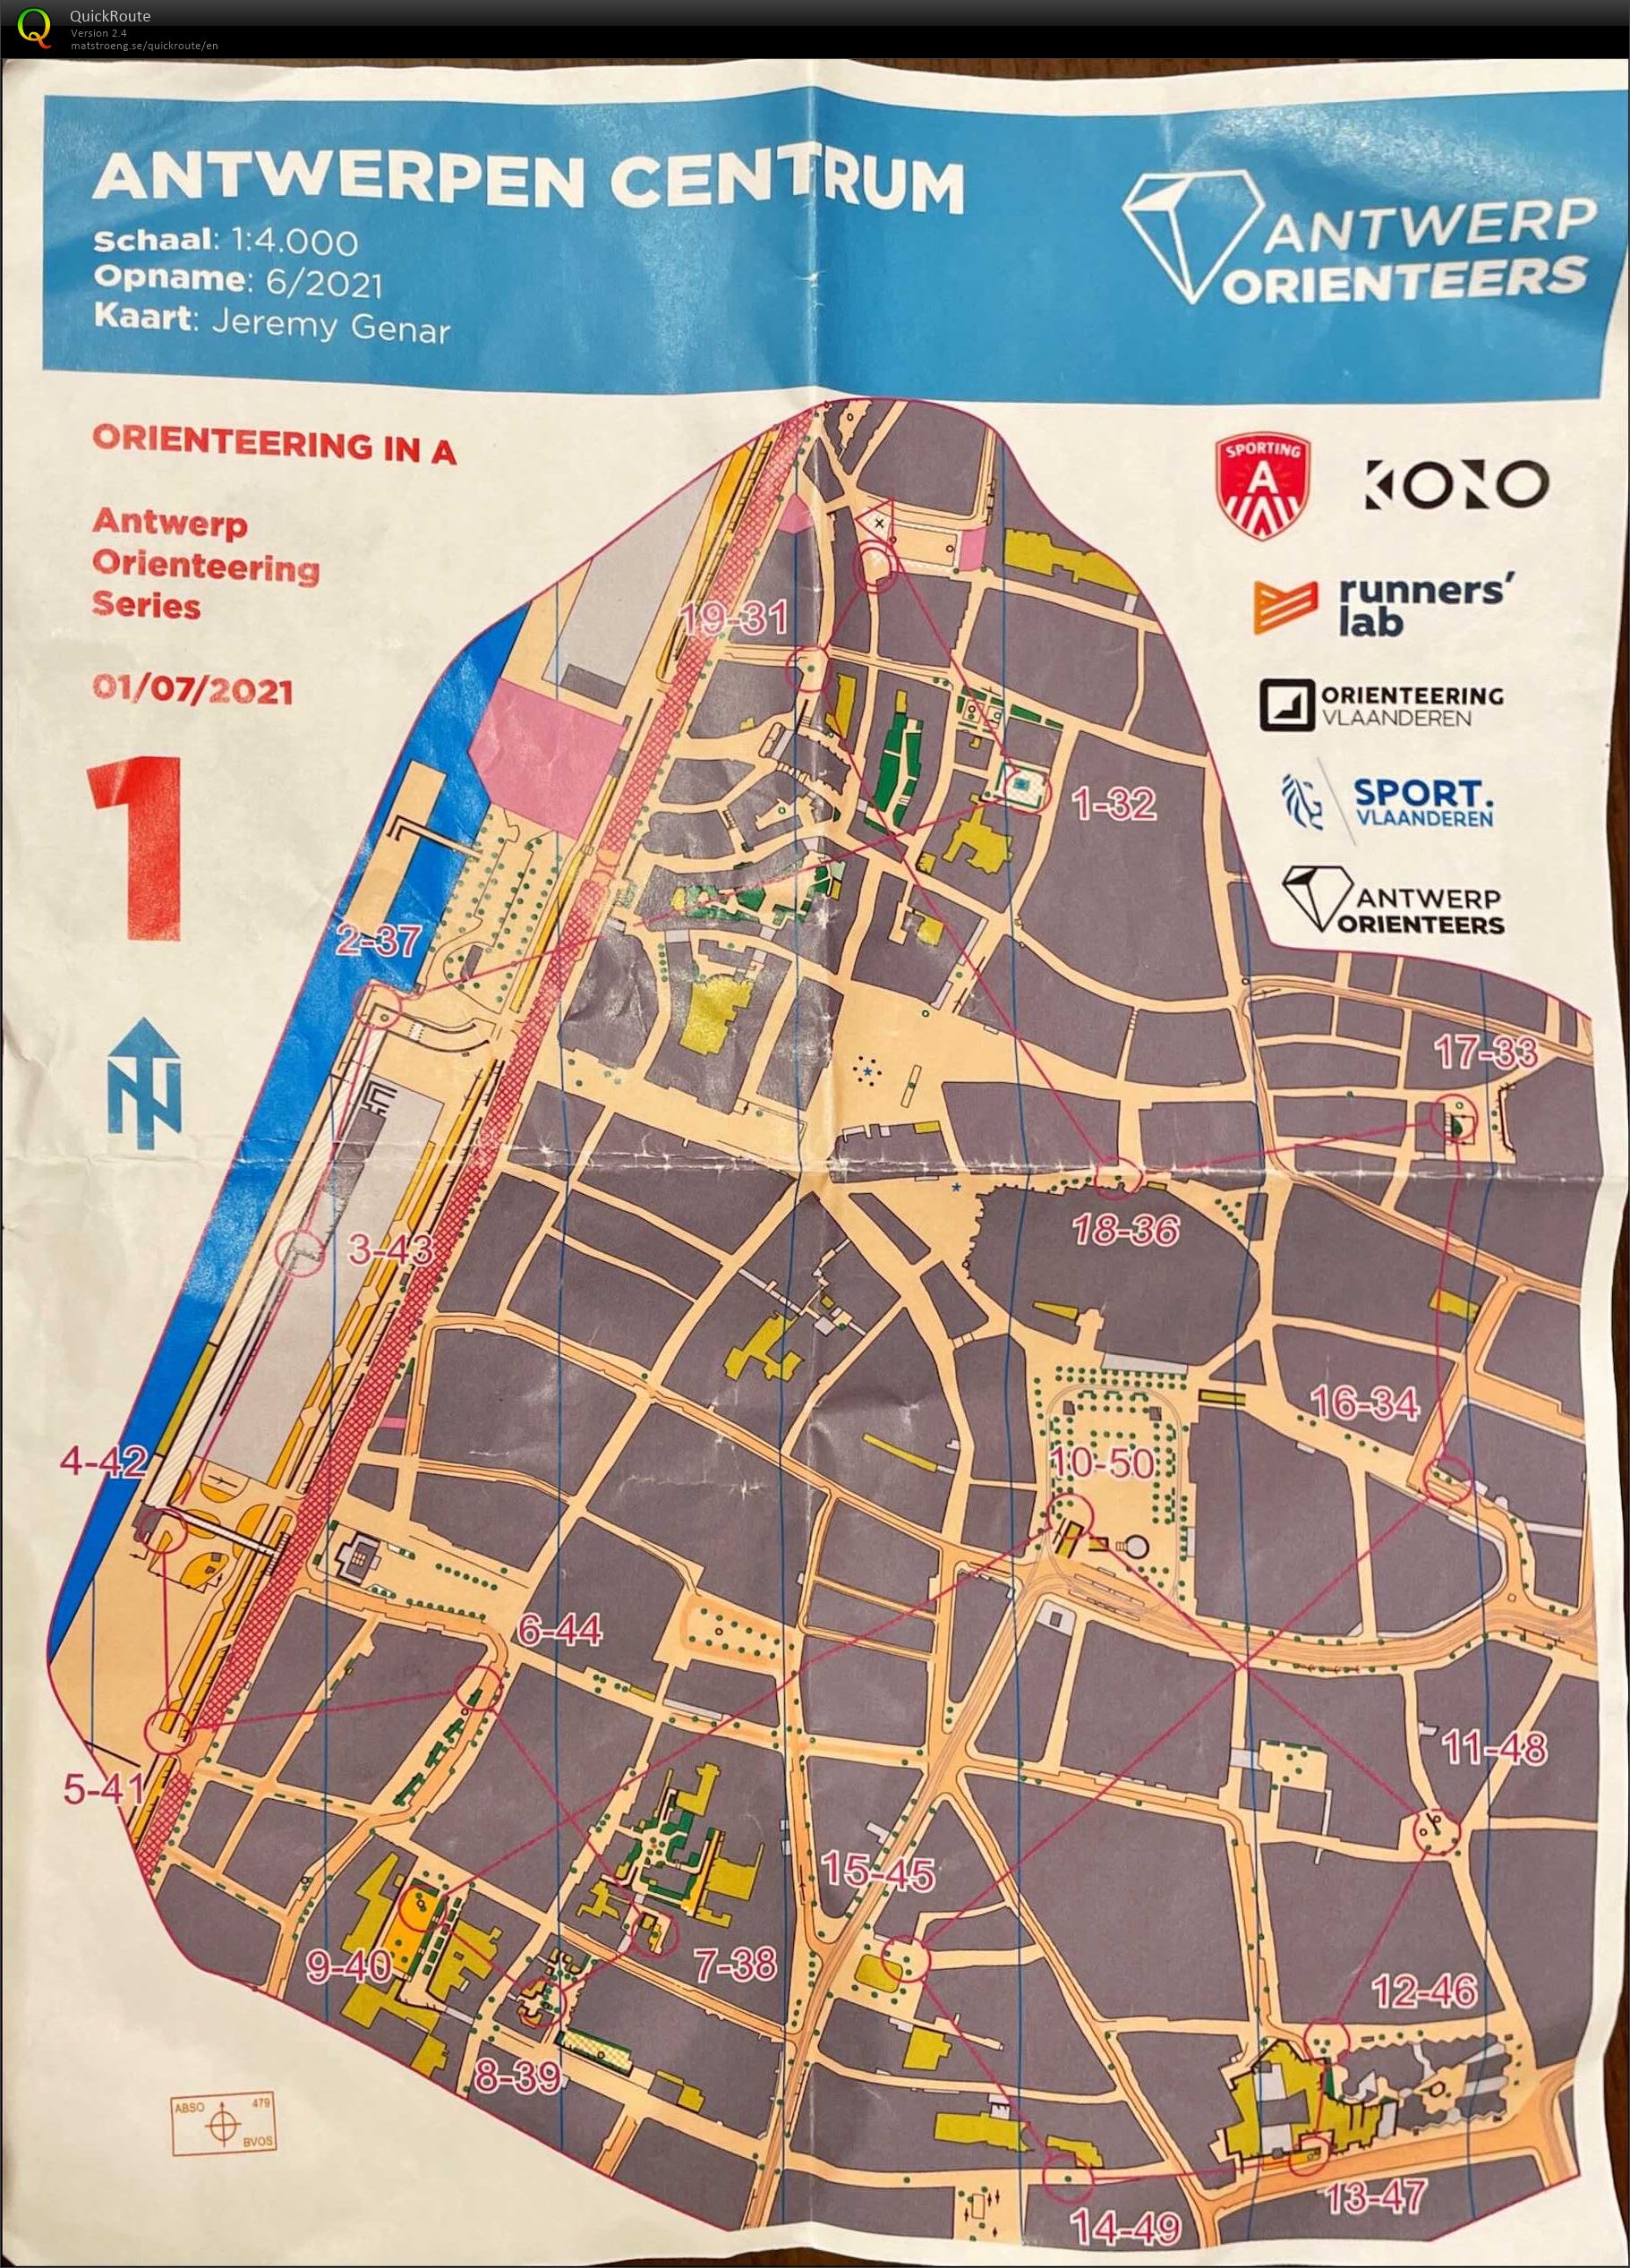 Antwerp Orienteering Series - Antwerpen Centrum - 5K (2021-07-01)